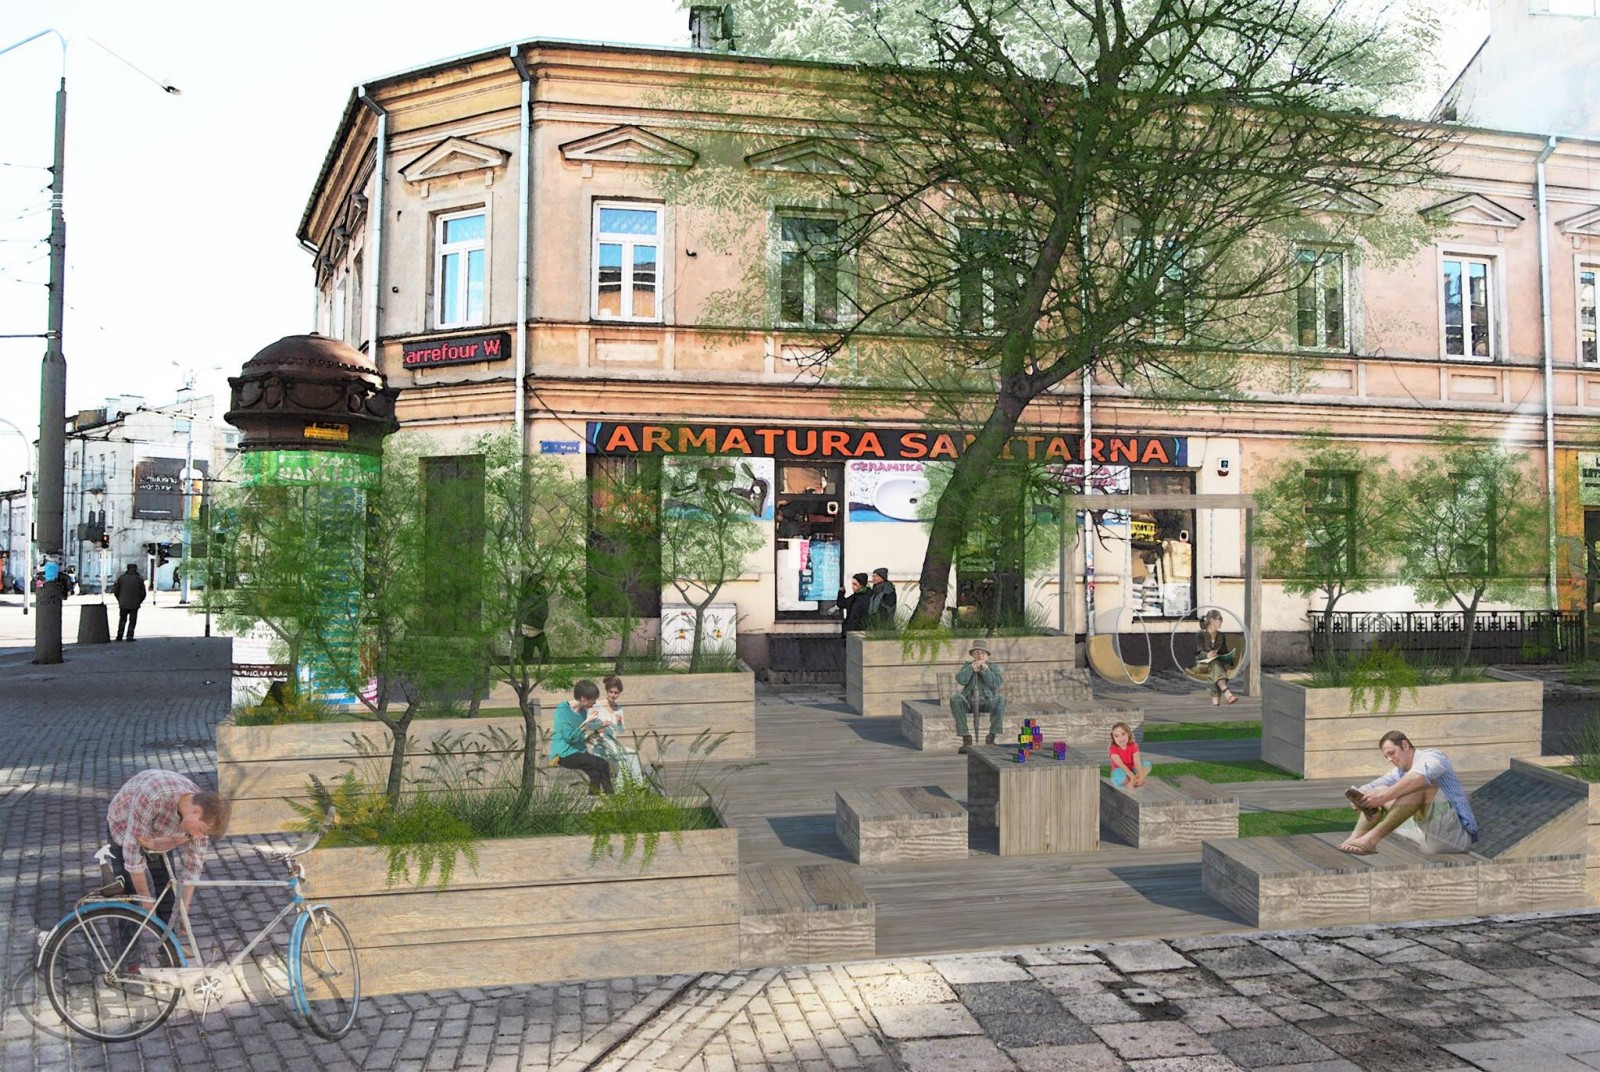 Wizualizacja woonerfu na ulicy 1 maja w Lublinie przedstawiona do konsultacji, autorzy: Emilia Chęć i Katarzyna Szczypior